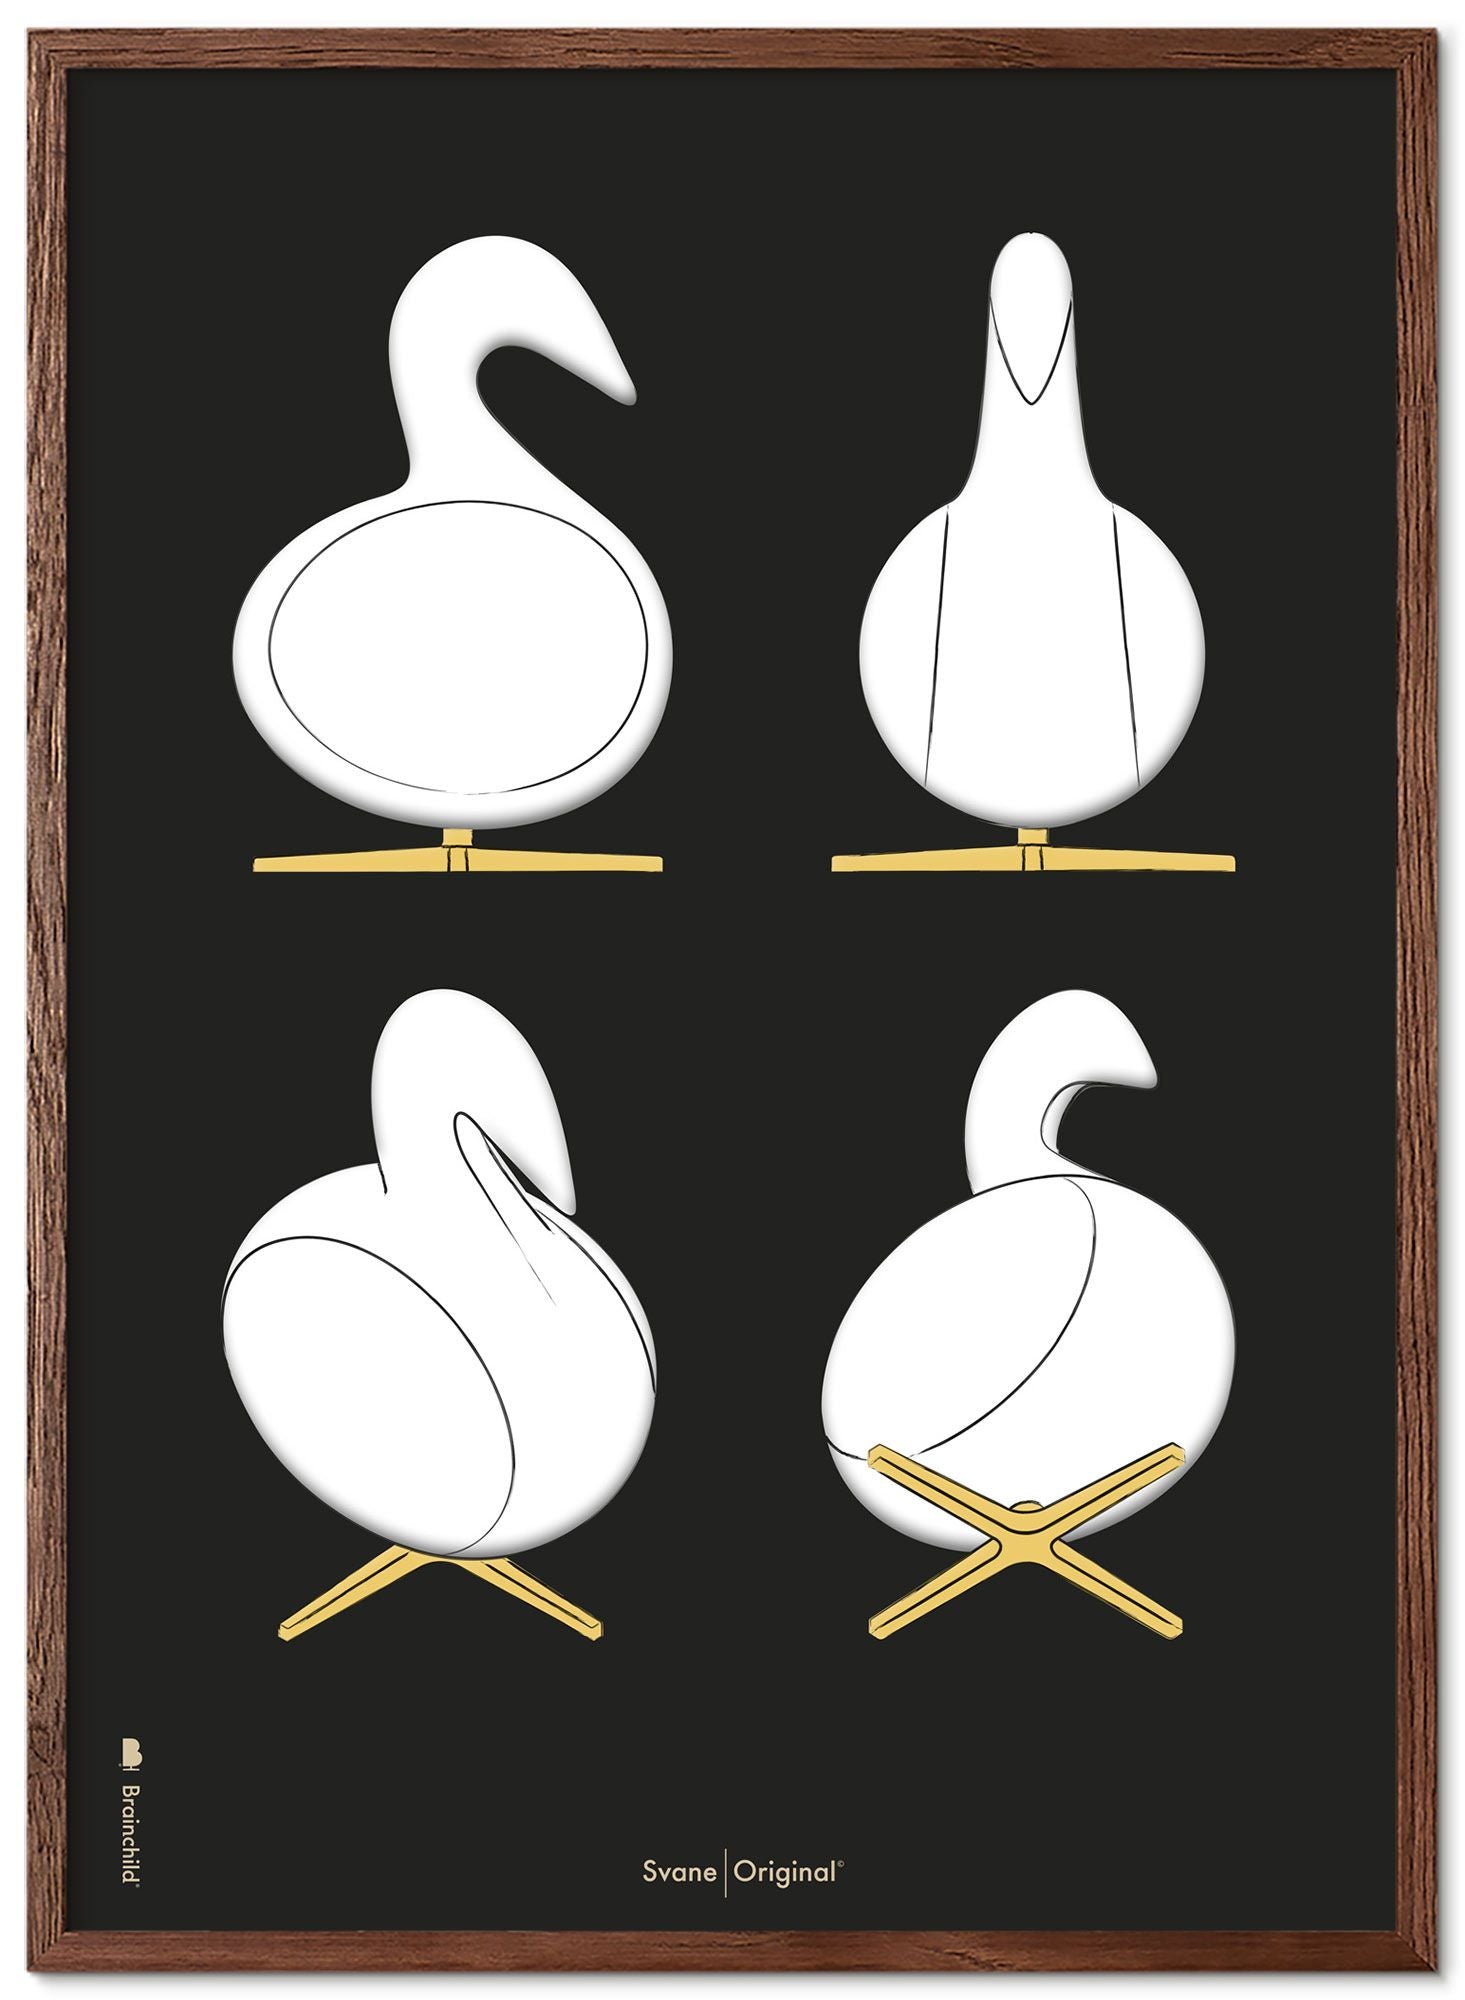 Brainchild Swan Design Sketches Poster Frame lavet af Dark Wood 50x70 cm, sort baggrund